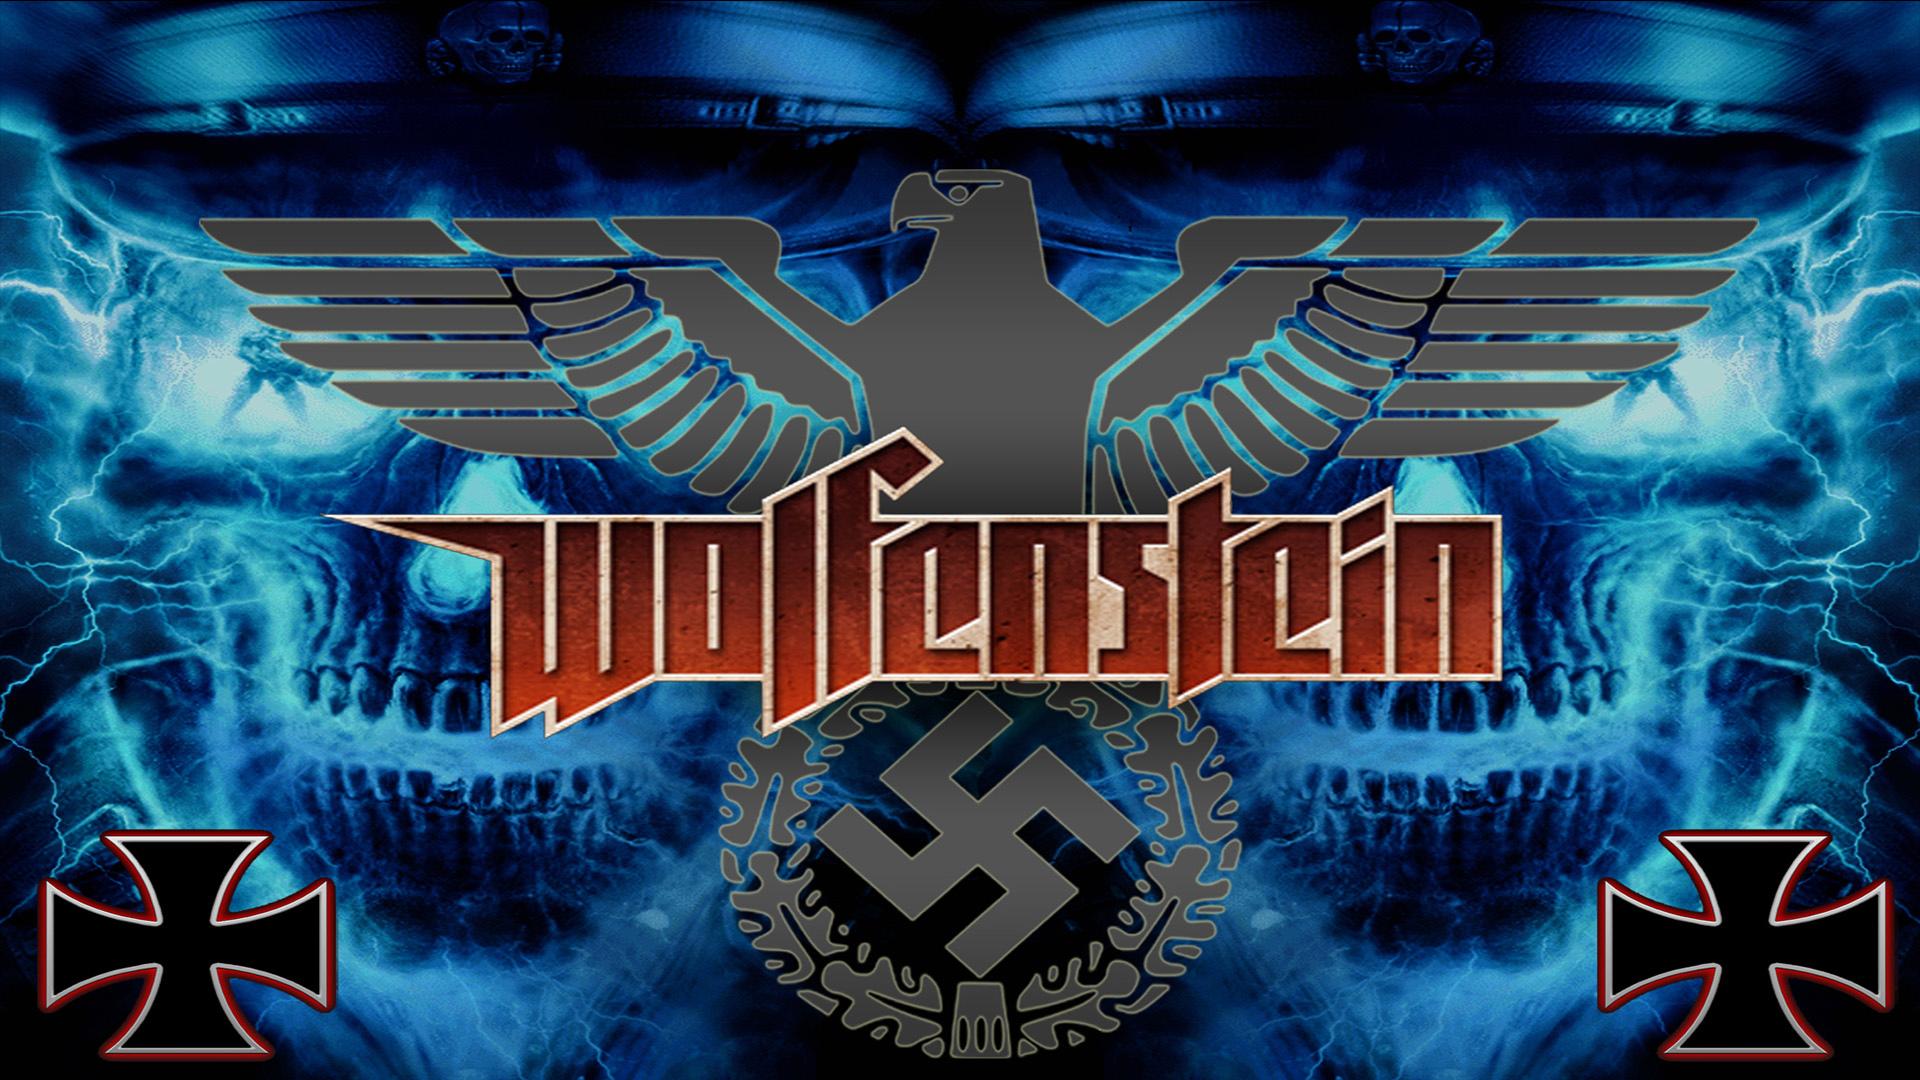 Wolfenstein wallpapers HD.